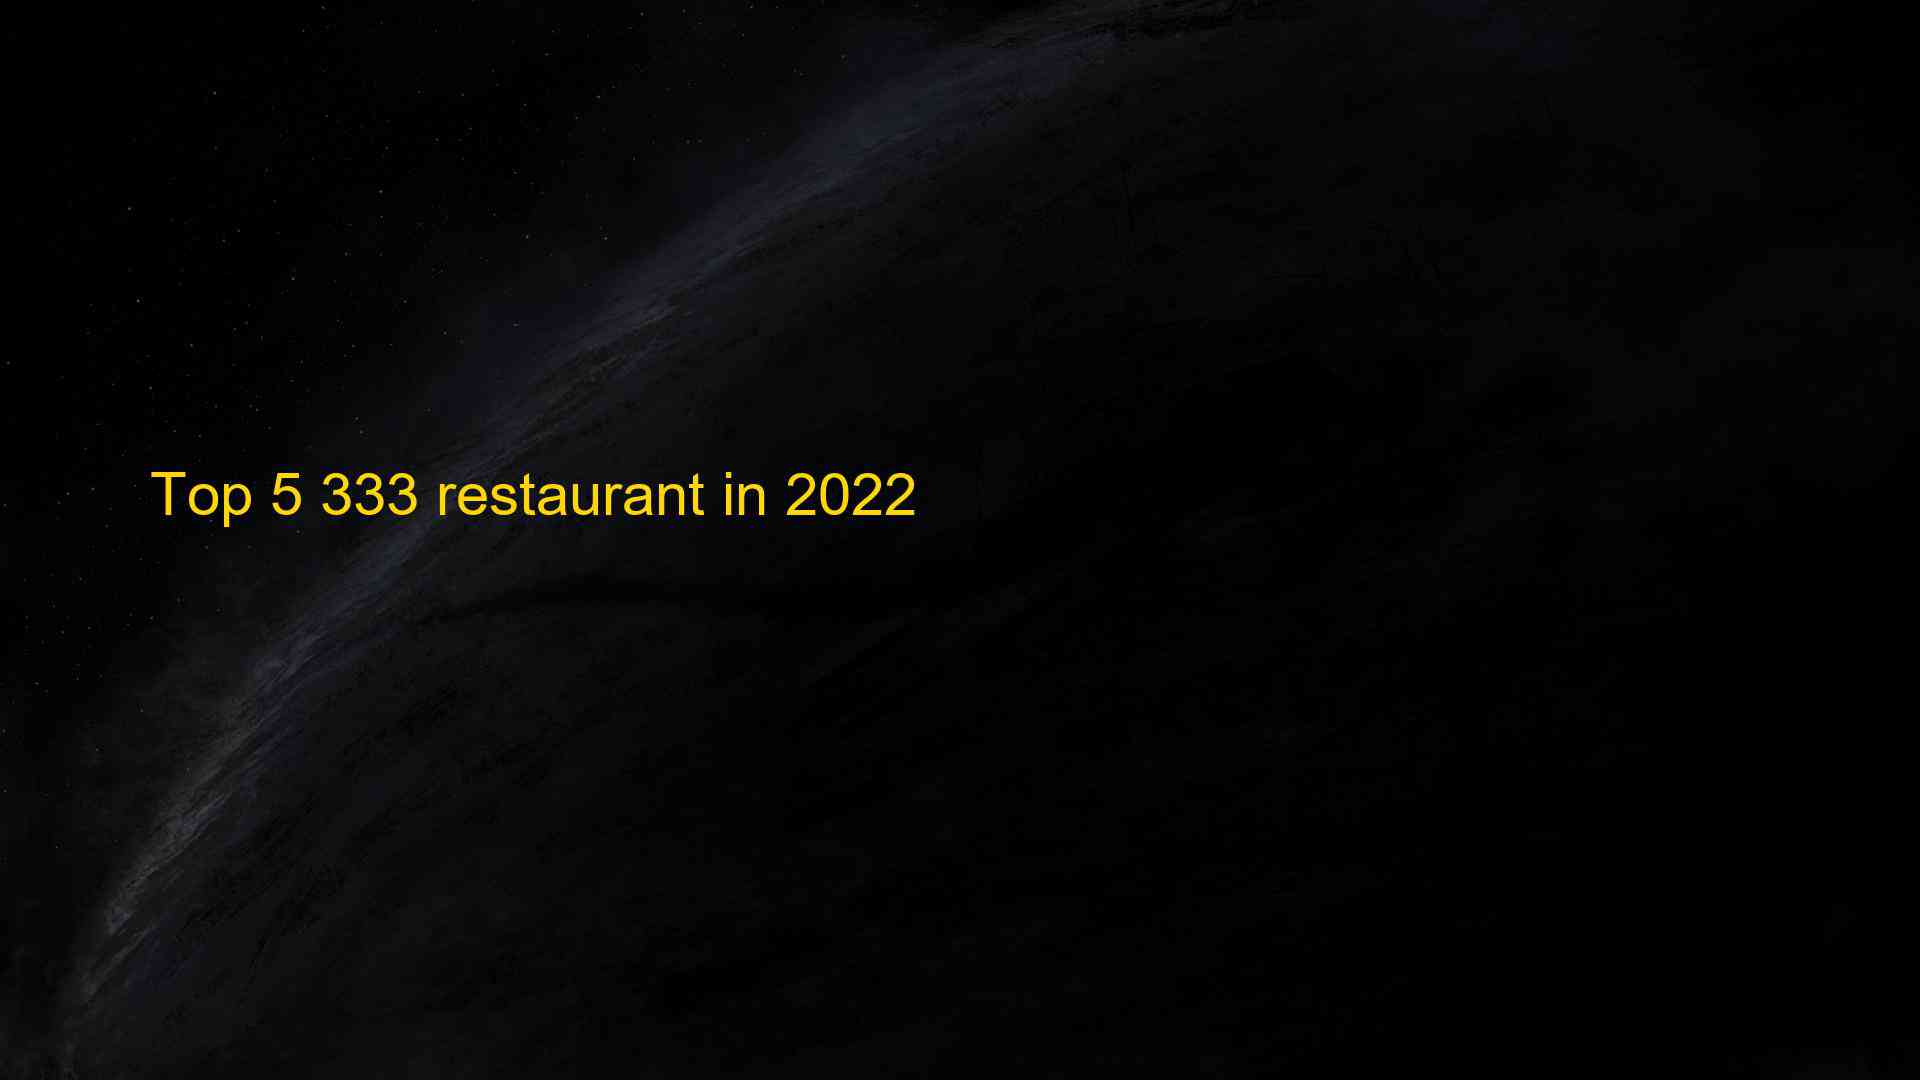 Top 5 333 restaurant in 2022 1663554293